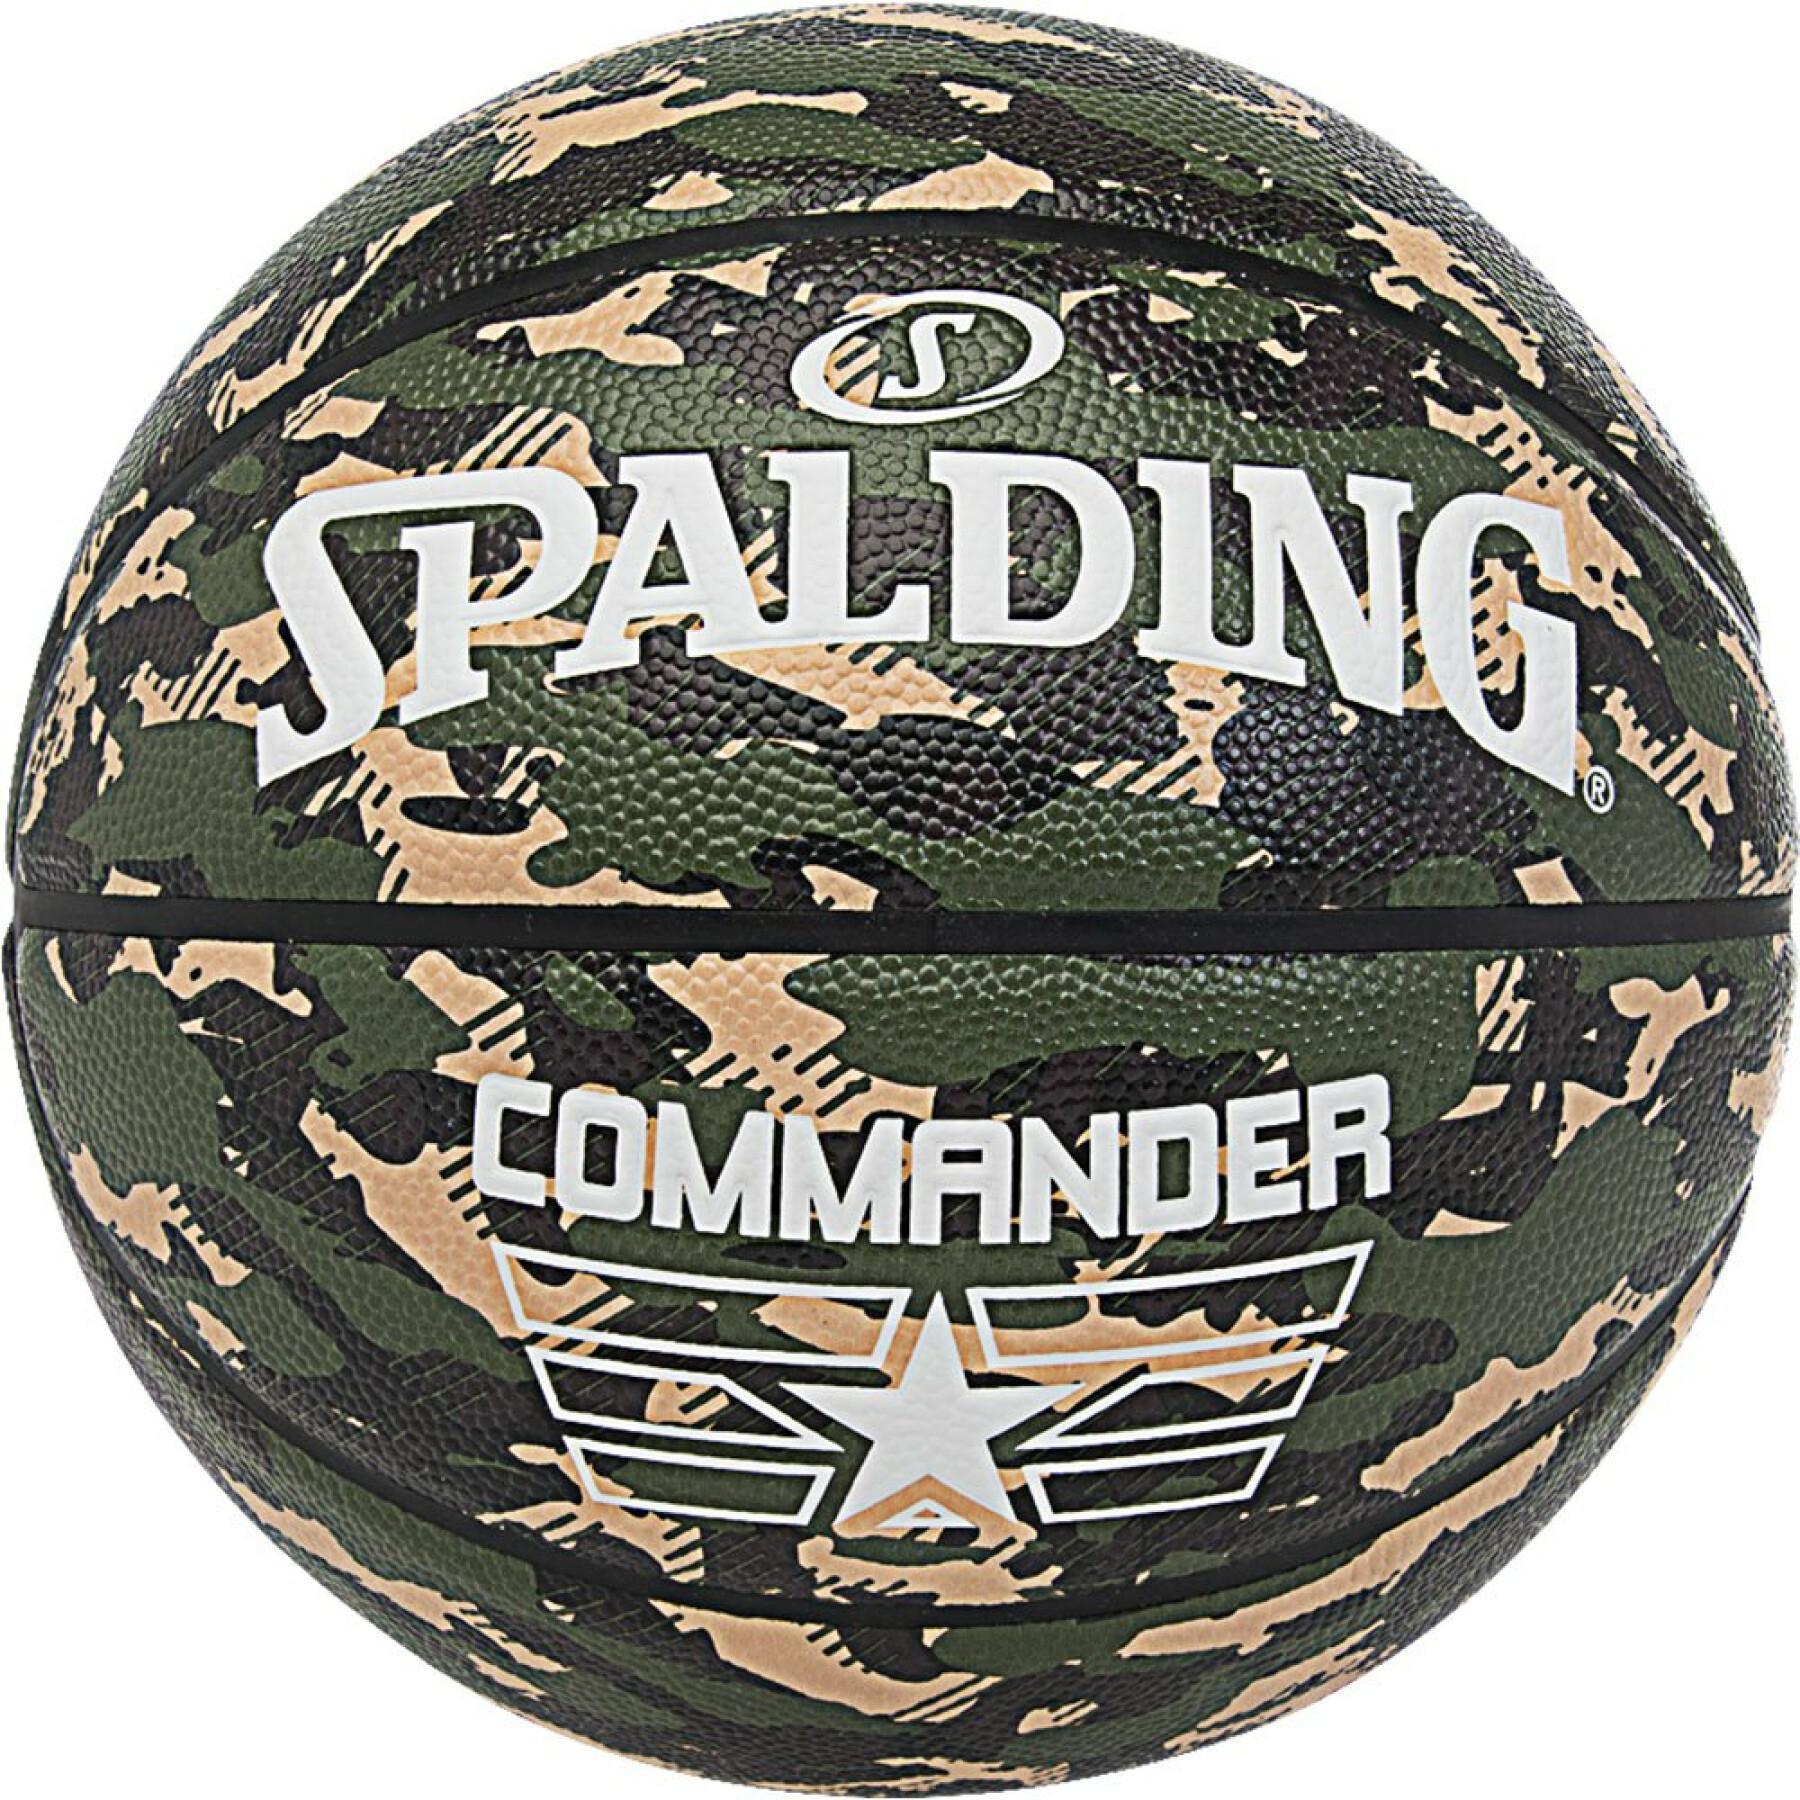 Basketbal Spalding Commander